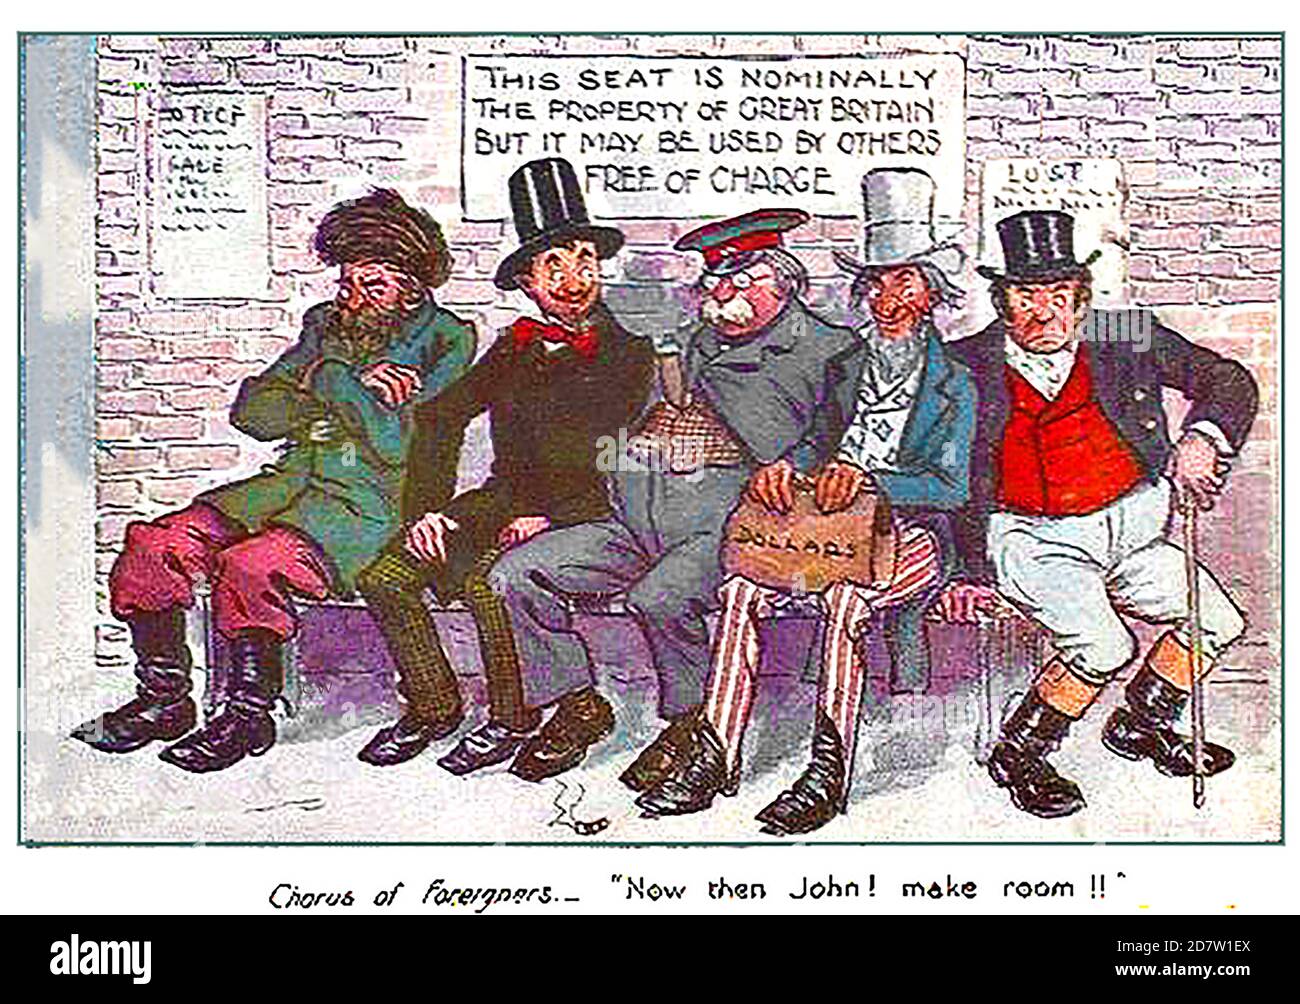 Eine englische politische Comic-Postkarte aus dem Jahr 1913, die zunächst das FREIHANDELSABKOMMEN kommentiert, aber realistisch für den Brexit der Neuzeit und neue internationale Handelsverhandlungen ist. Von links nach rechts sind Russland, Frankreich, Deutschland, Amerika und John Bull (England) vertreten. Stockfoto